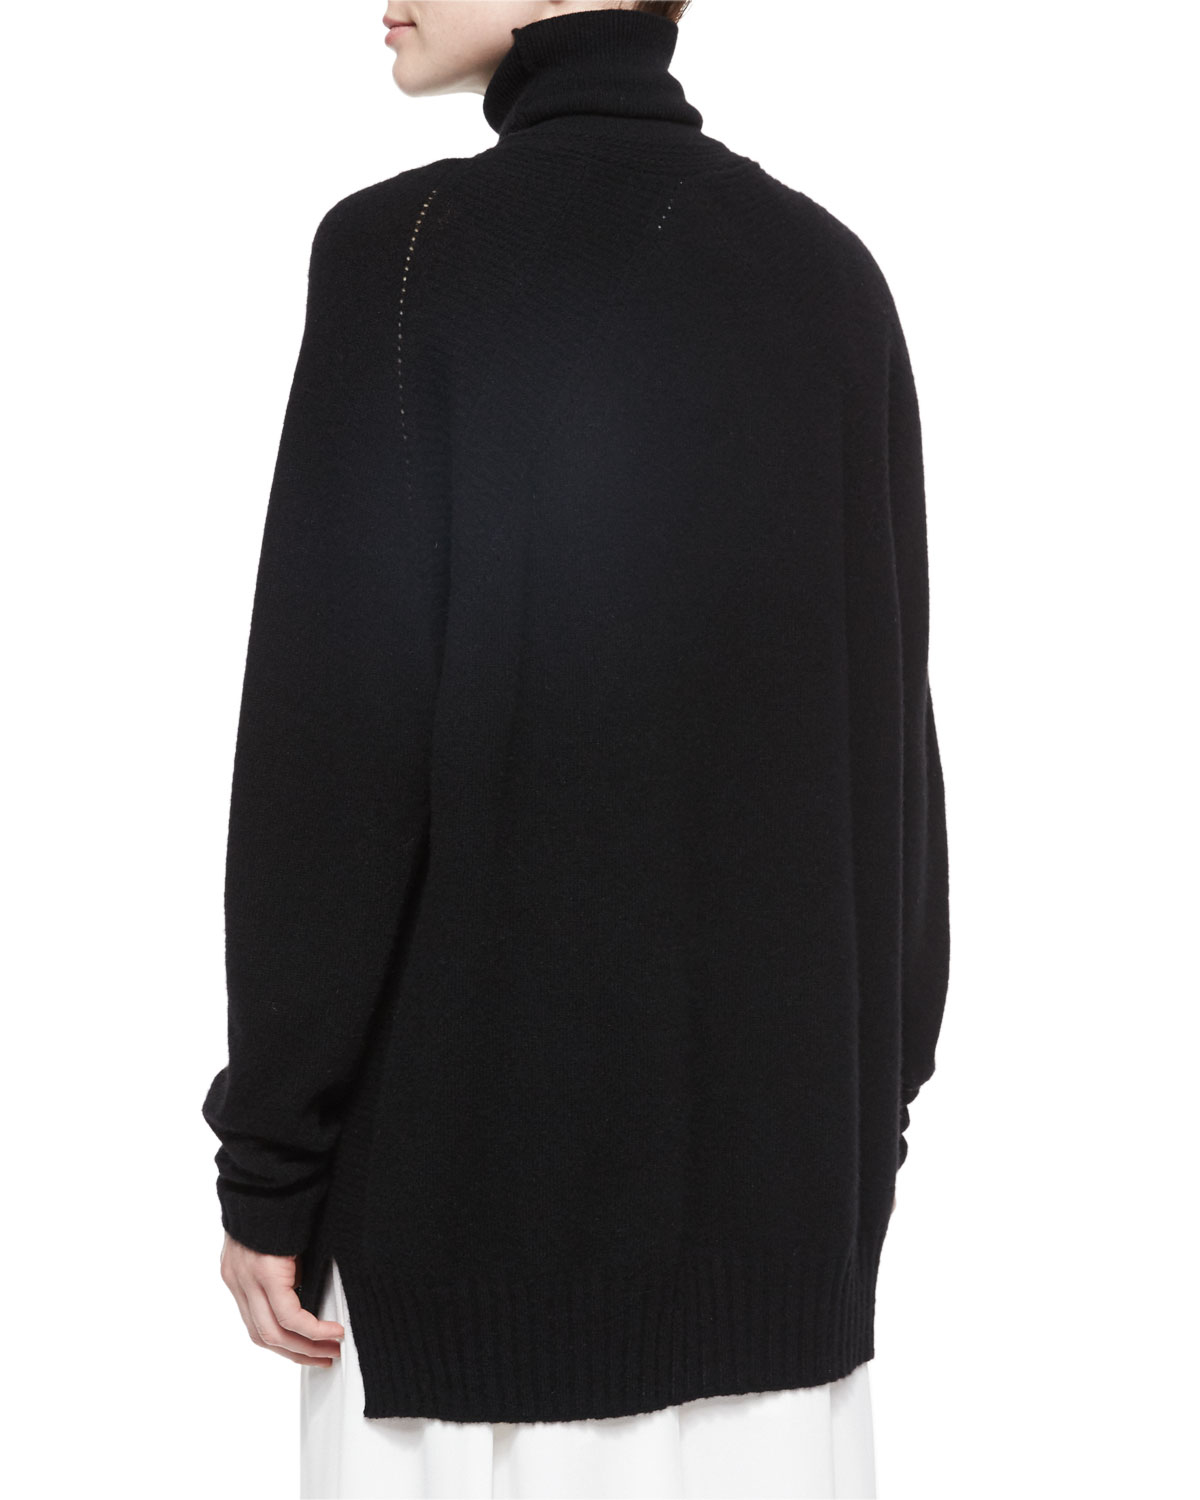 Belstaff Oversized Turtleneck Tunic Sweater in Black - Lyst